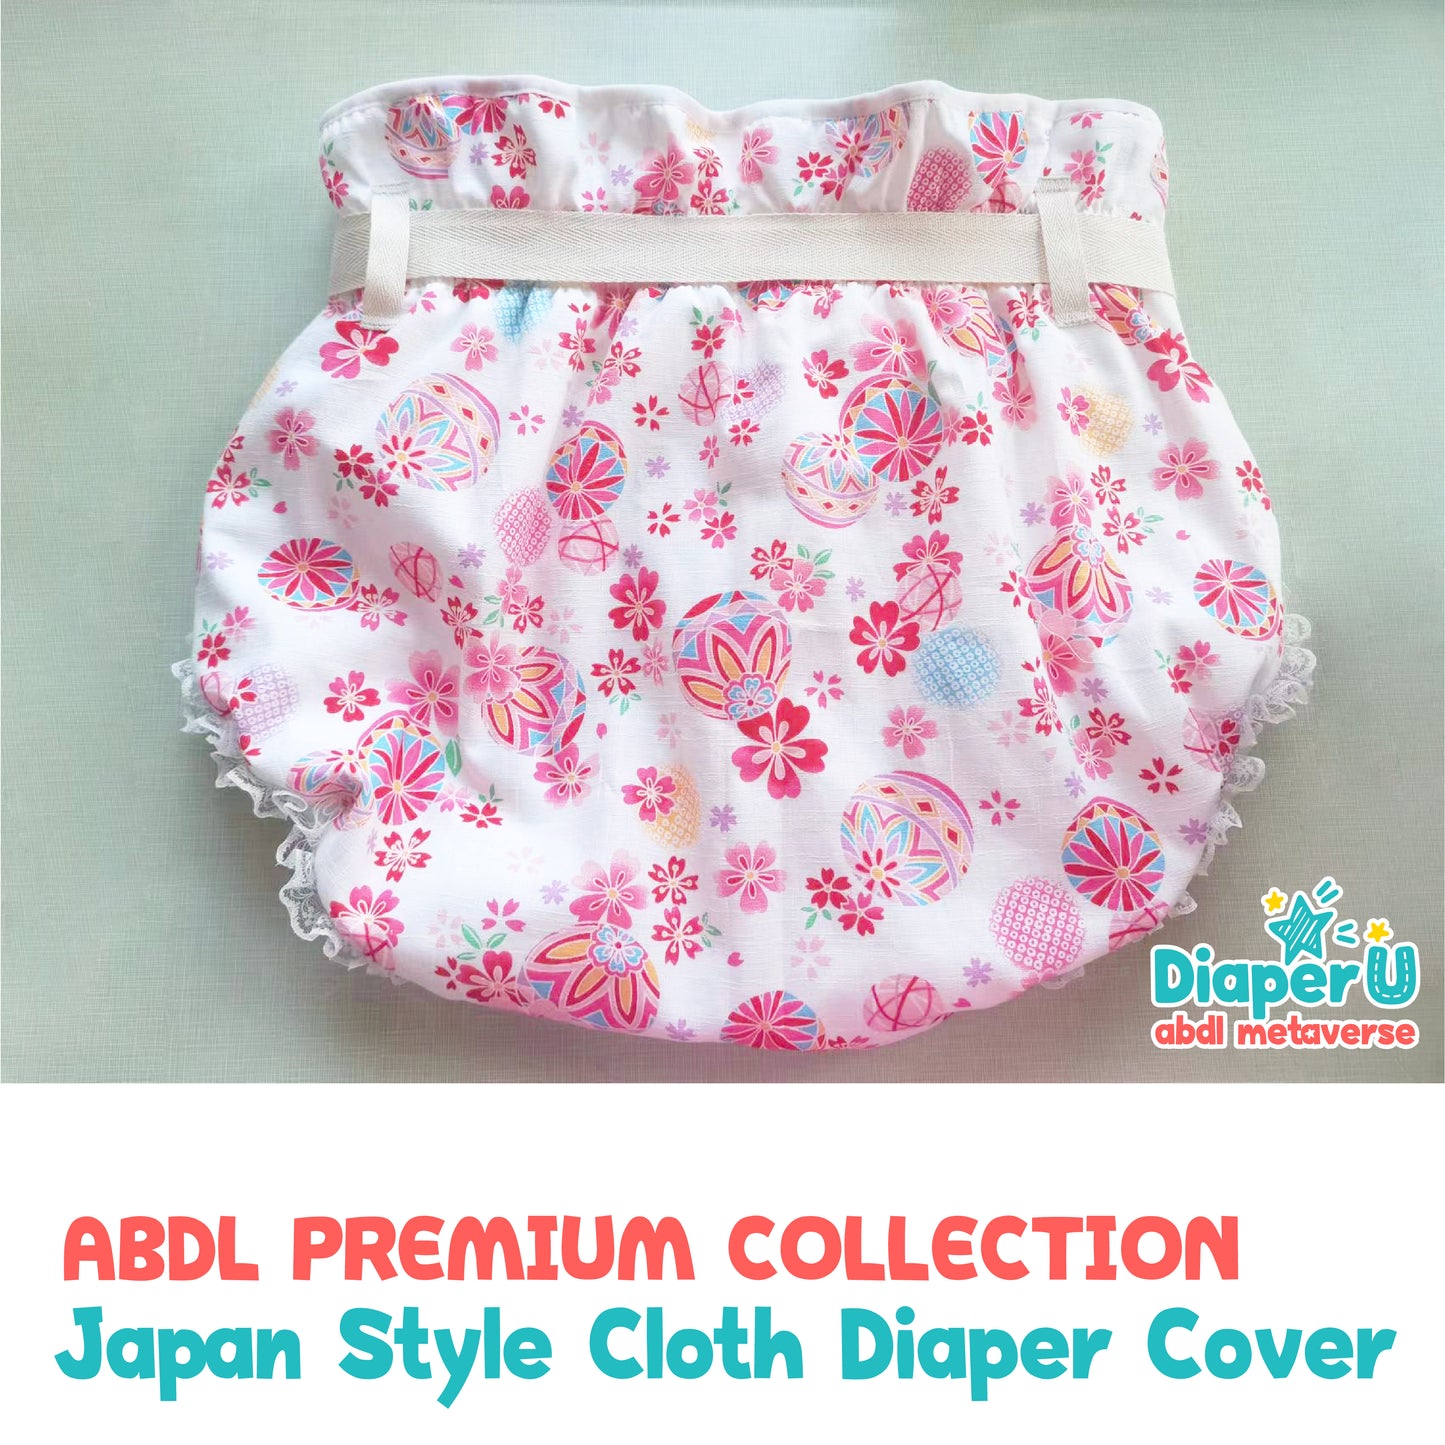 Japan Cloth Diaper Cover - Blooming Sakura